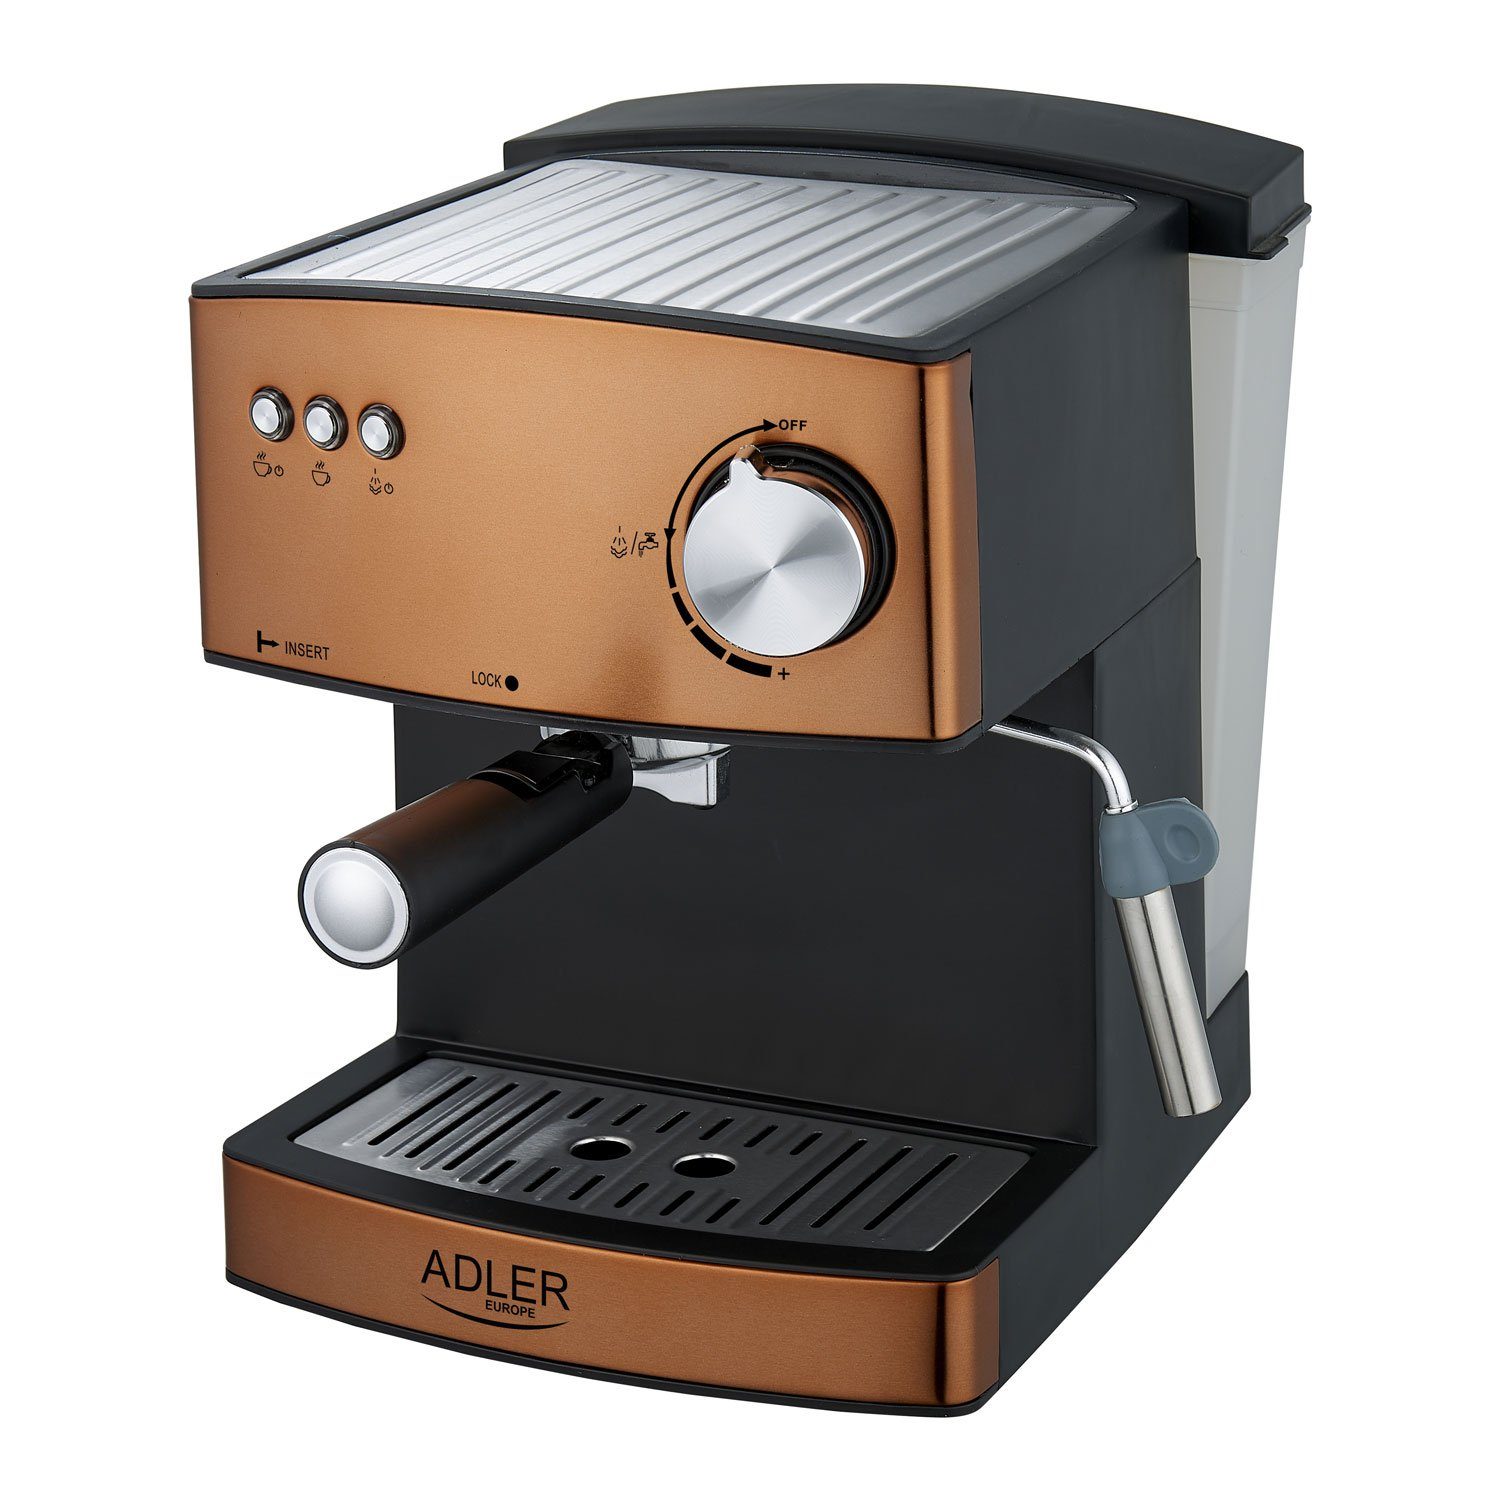 Adler Espressomaschine AD 4404cr Espressomaschine 15 bar mit Milchaufschäumer Farbe Kupfer